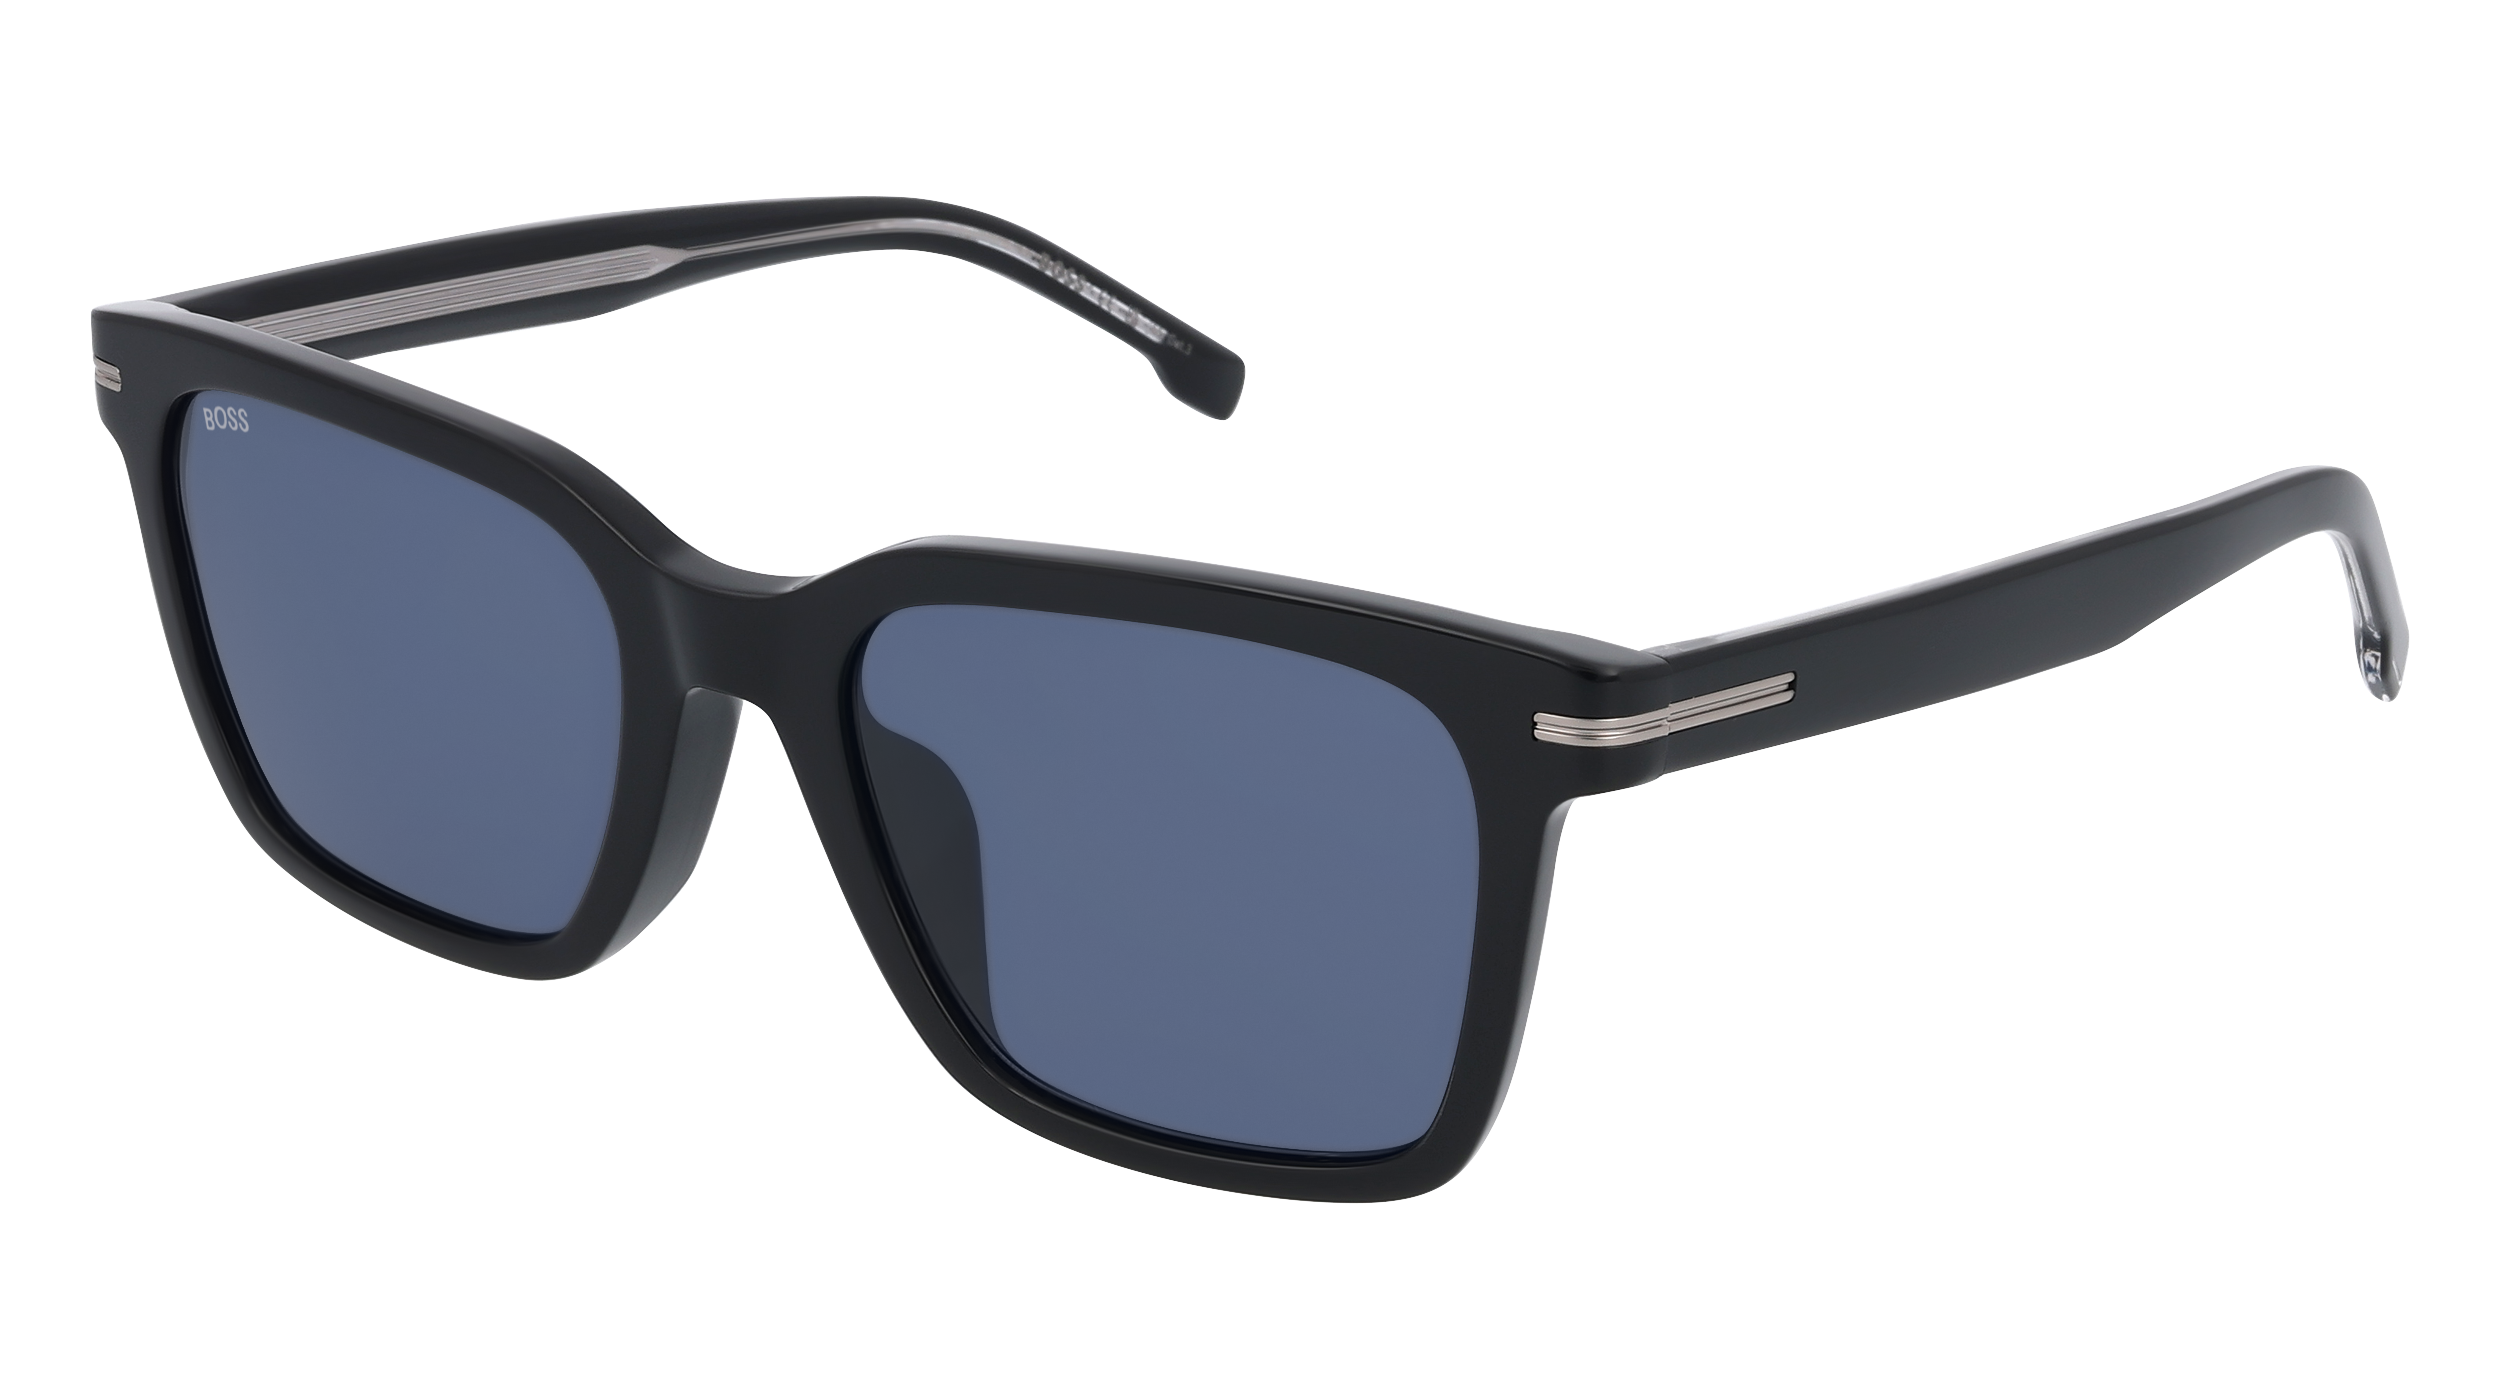 ▷ Buy sunglasses BOSS Hugo Boss at Prodevisión